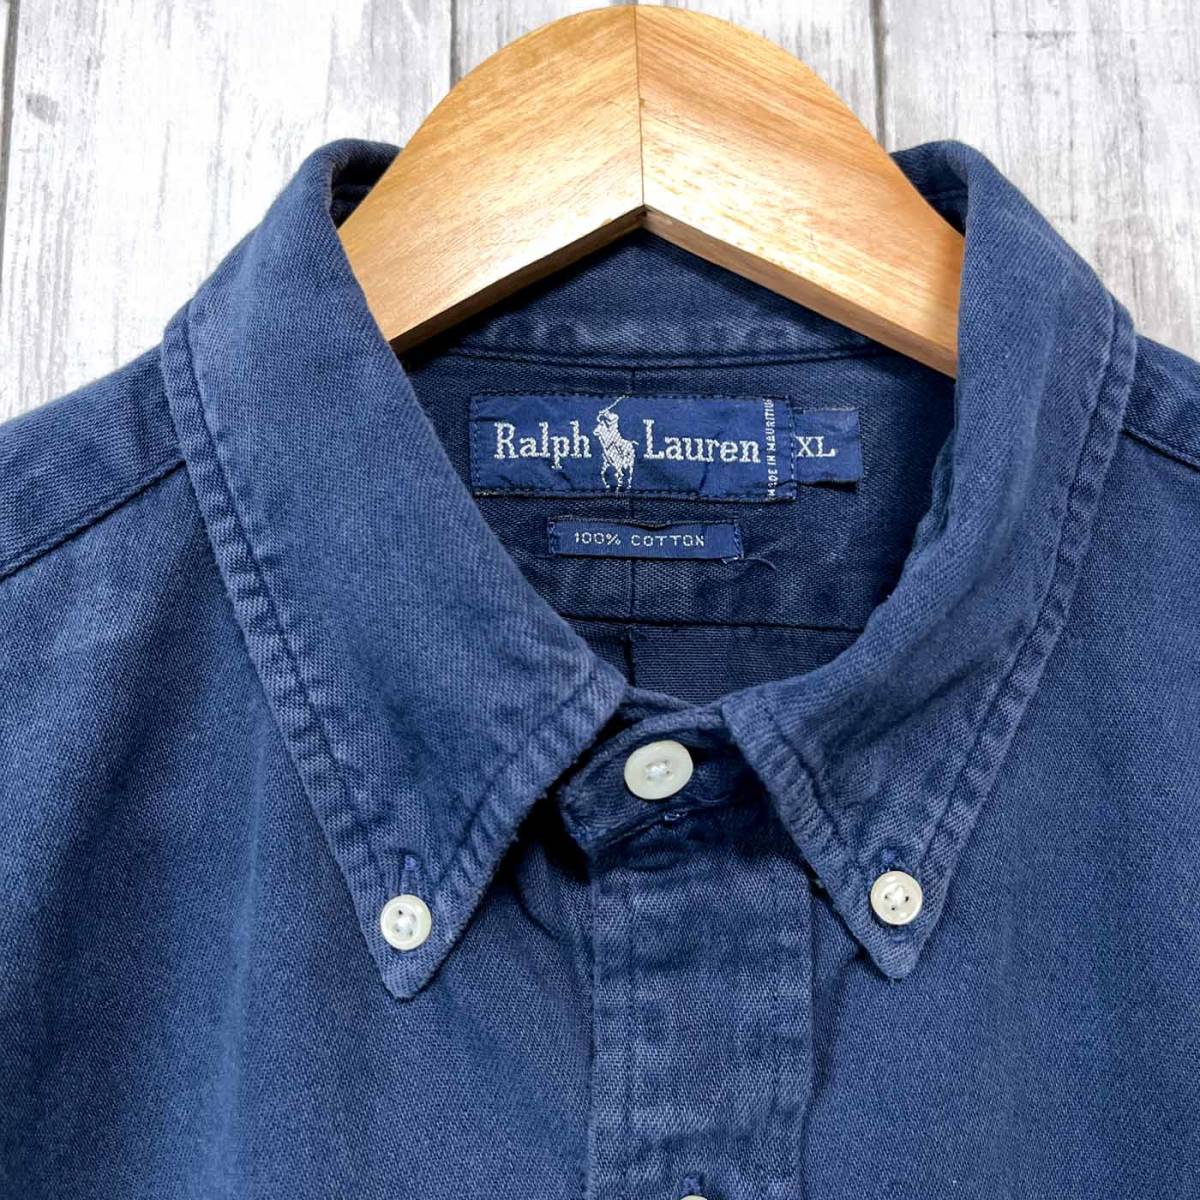  Ralph Lauren Ralph Lauren рубашка с длинным рукавом chino рубашка толстый мужской one отметка XL размер 3-211